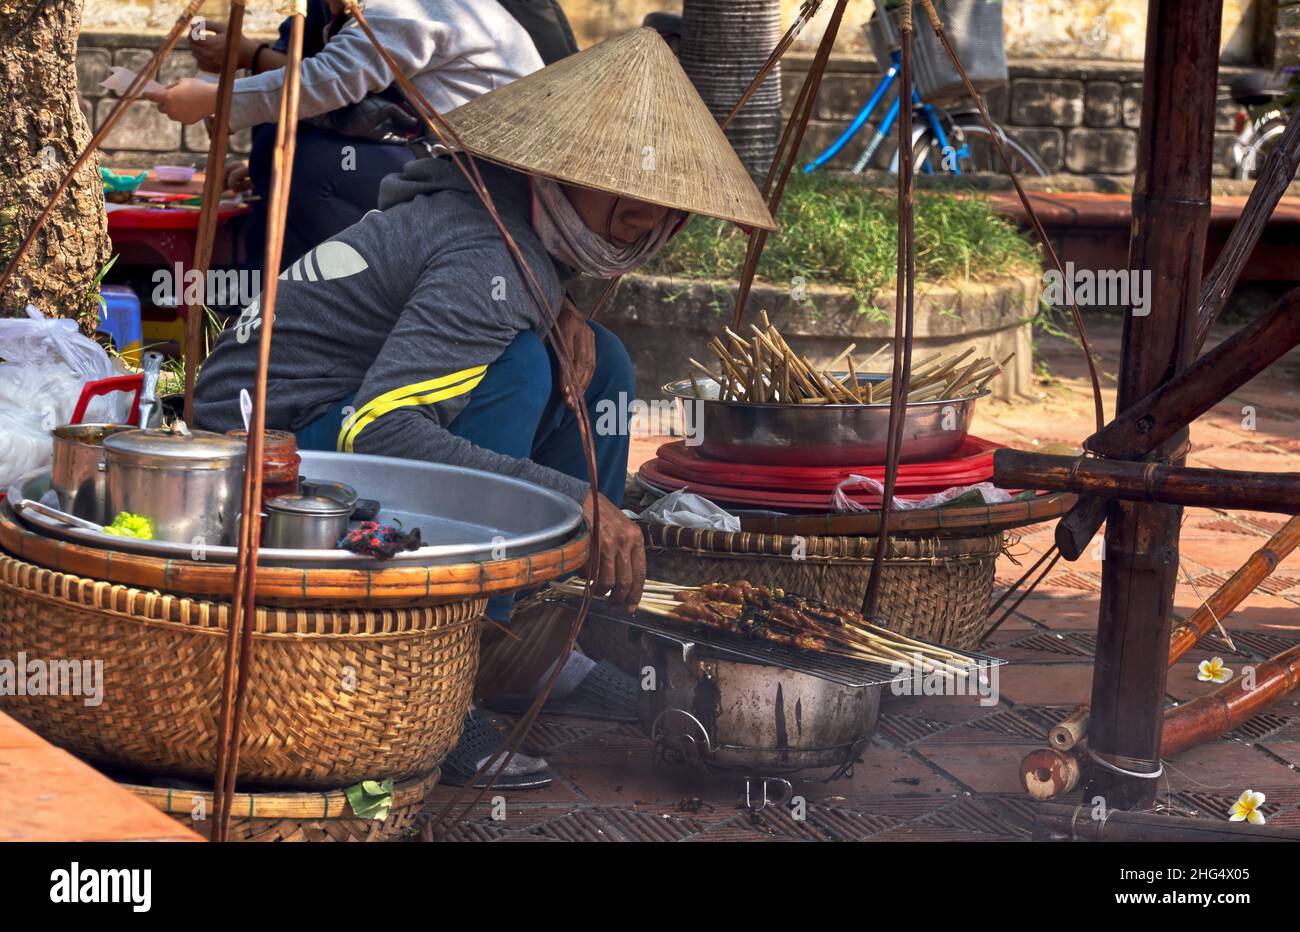 Vietnamesin in gebückter Haltung mit Reis- bzw. Kegelhut grillt auf einem Markt in Hoi An Fleischspieße für den Straßenverkauf Stock Photo